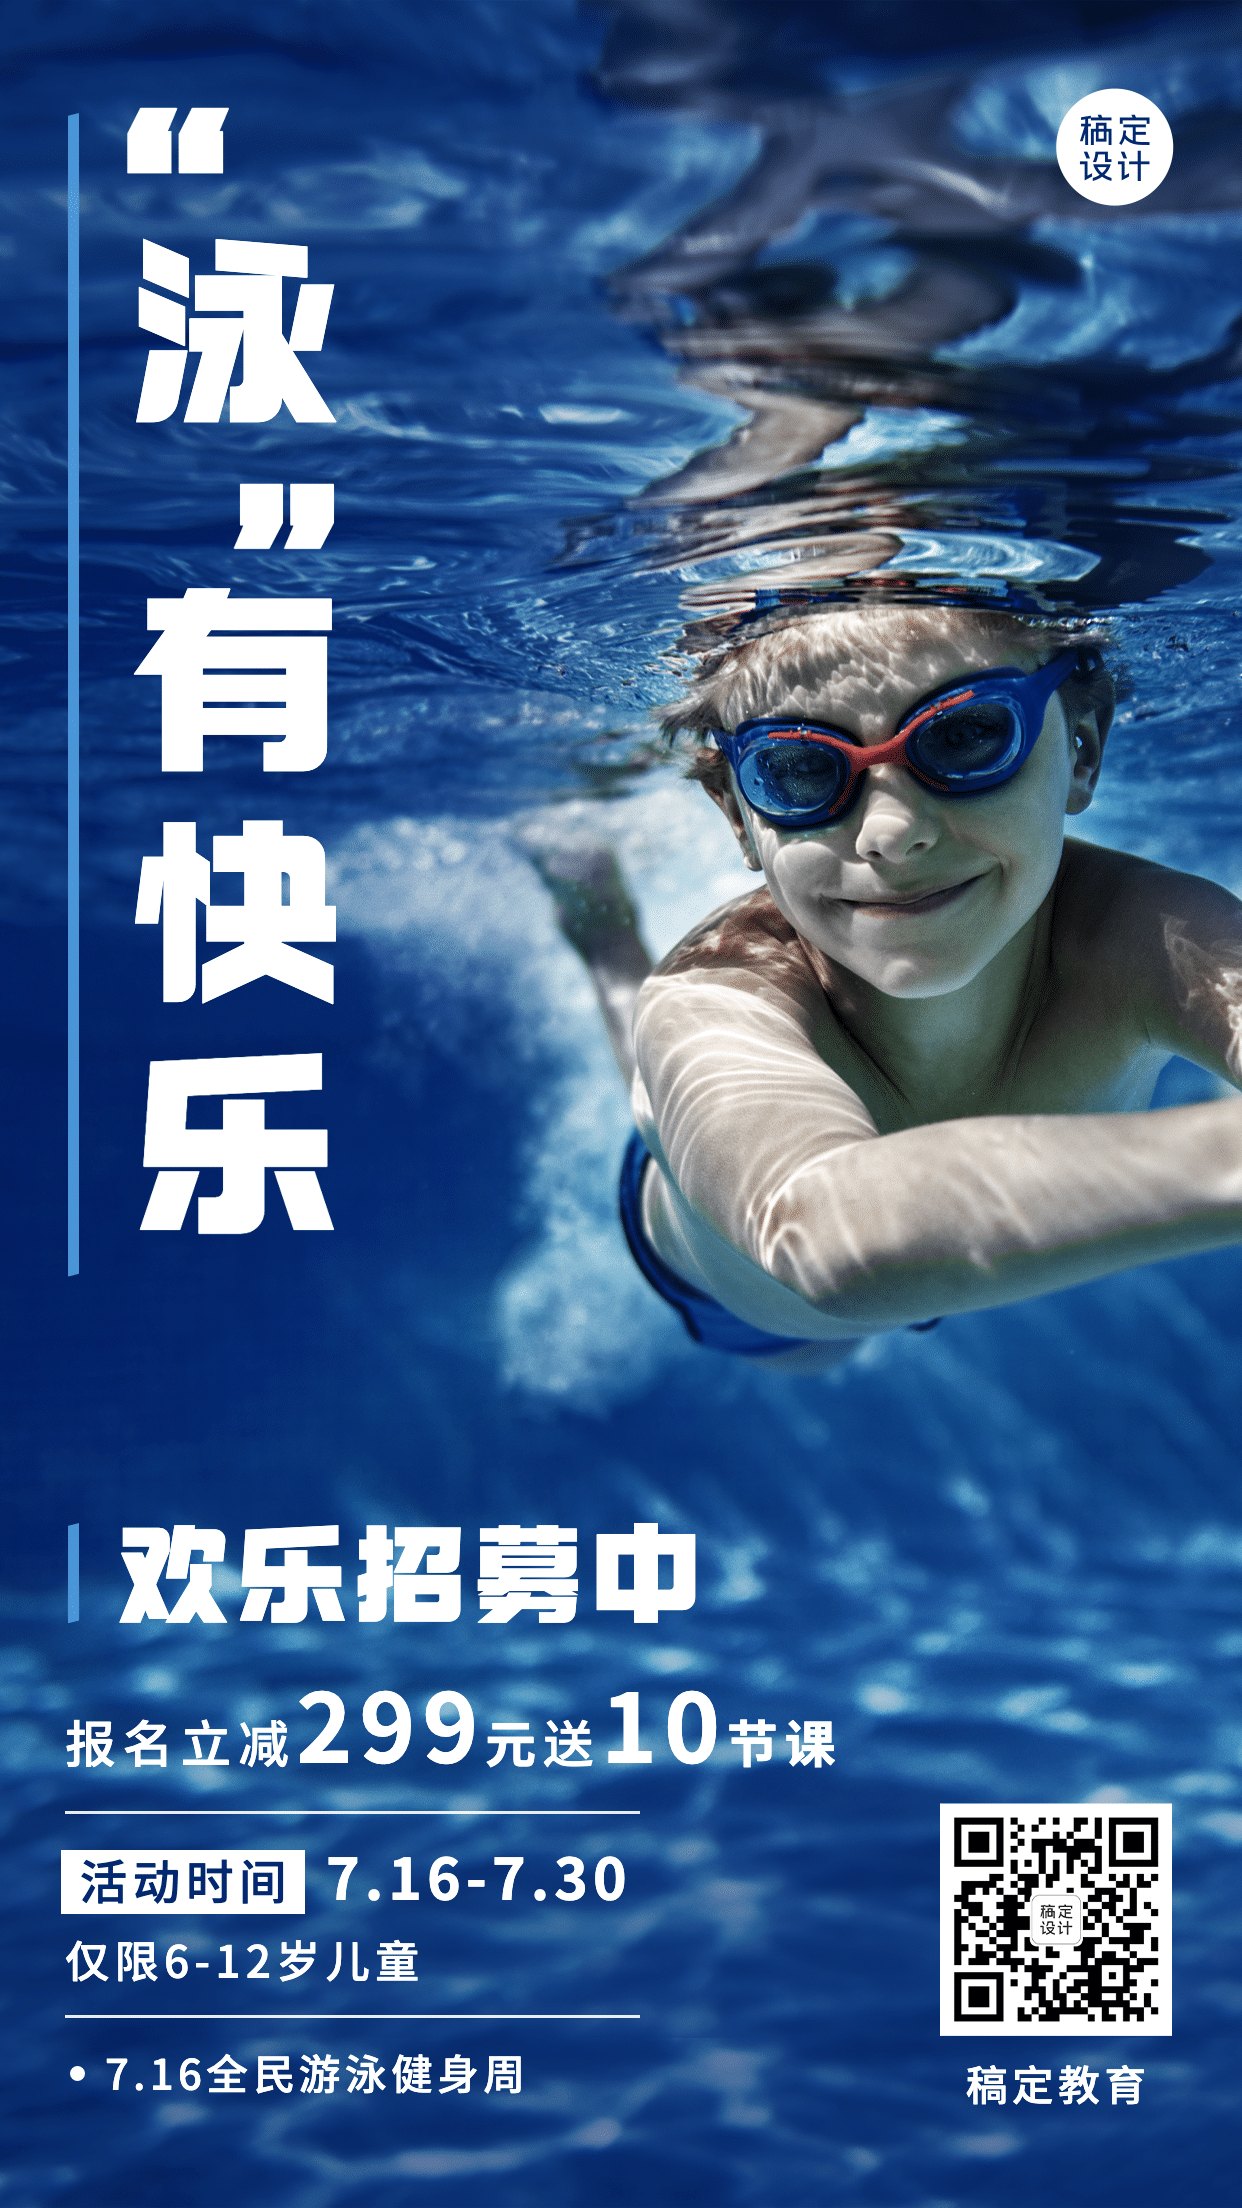 教育培训全国游泳日游泳课程营销招生简约实景手机海报预览效果